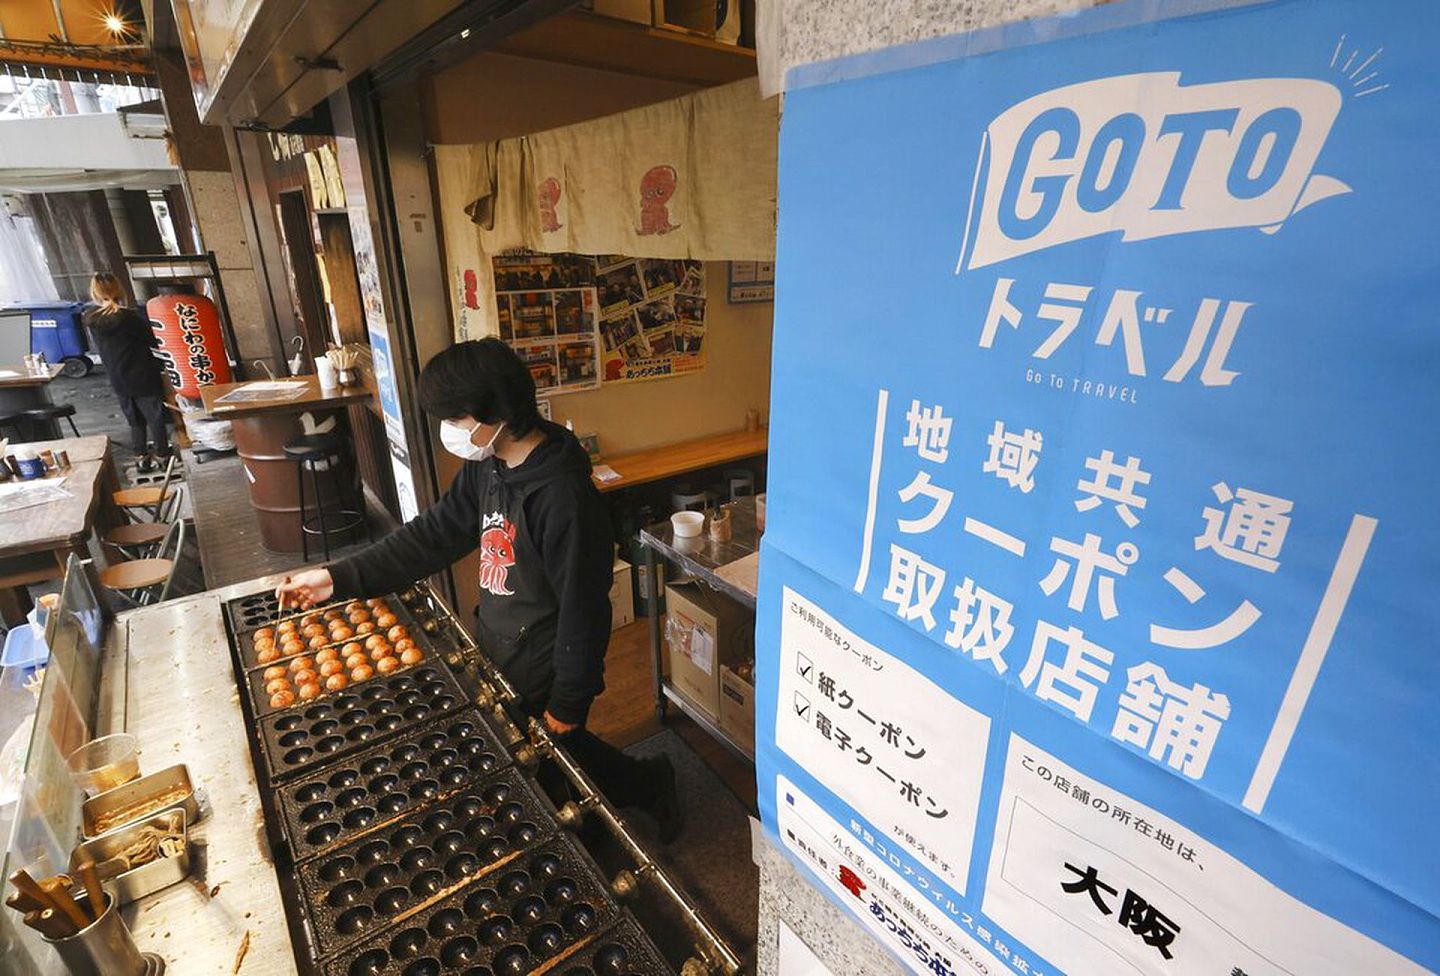 2021年12月28日大阪一个发售烤丸子的小贩，他的档摊张贴菅义伟推广的日本振兴旅游资助计划“去旅游吧”（GoTo Travel）的海报，计划在12月28日暂停。（AP）